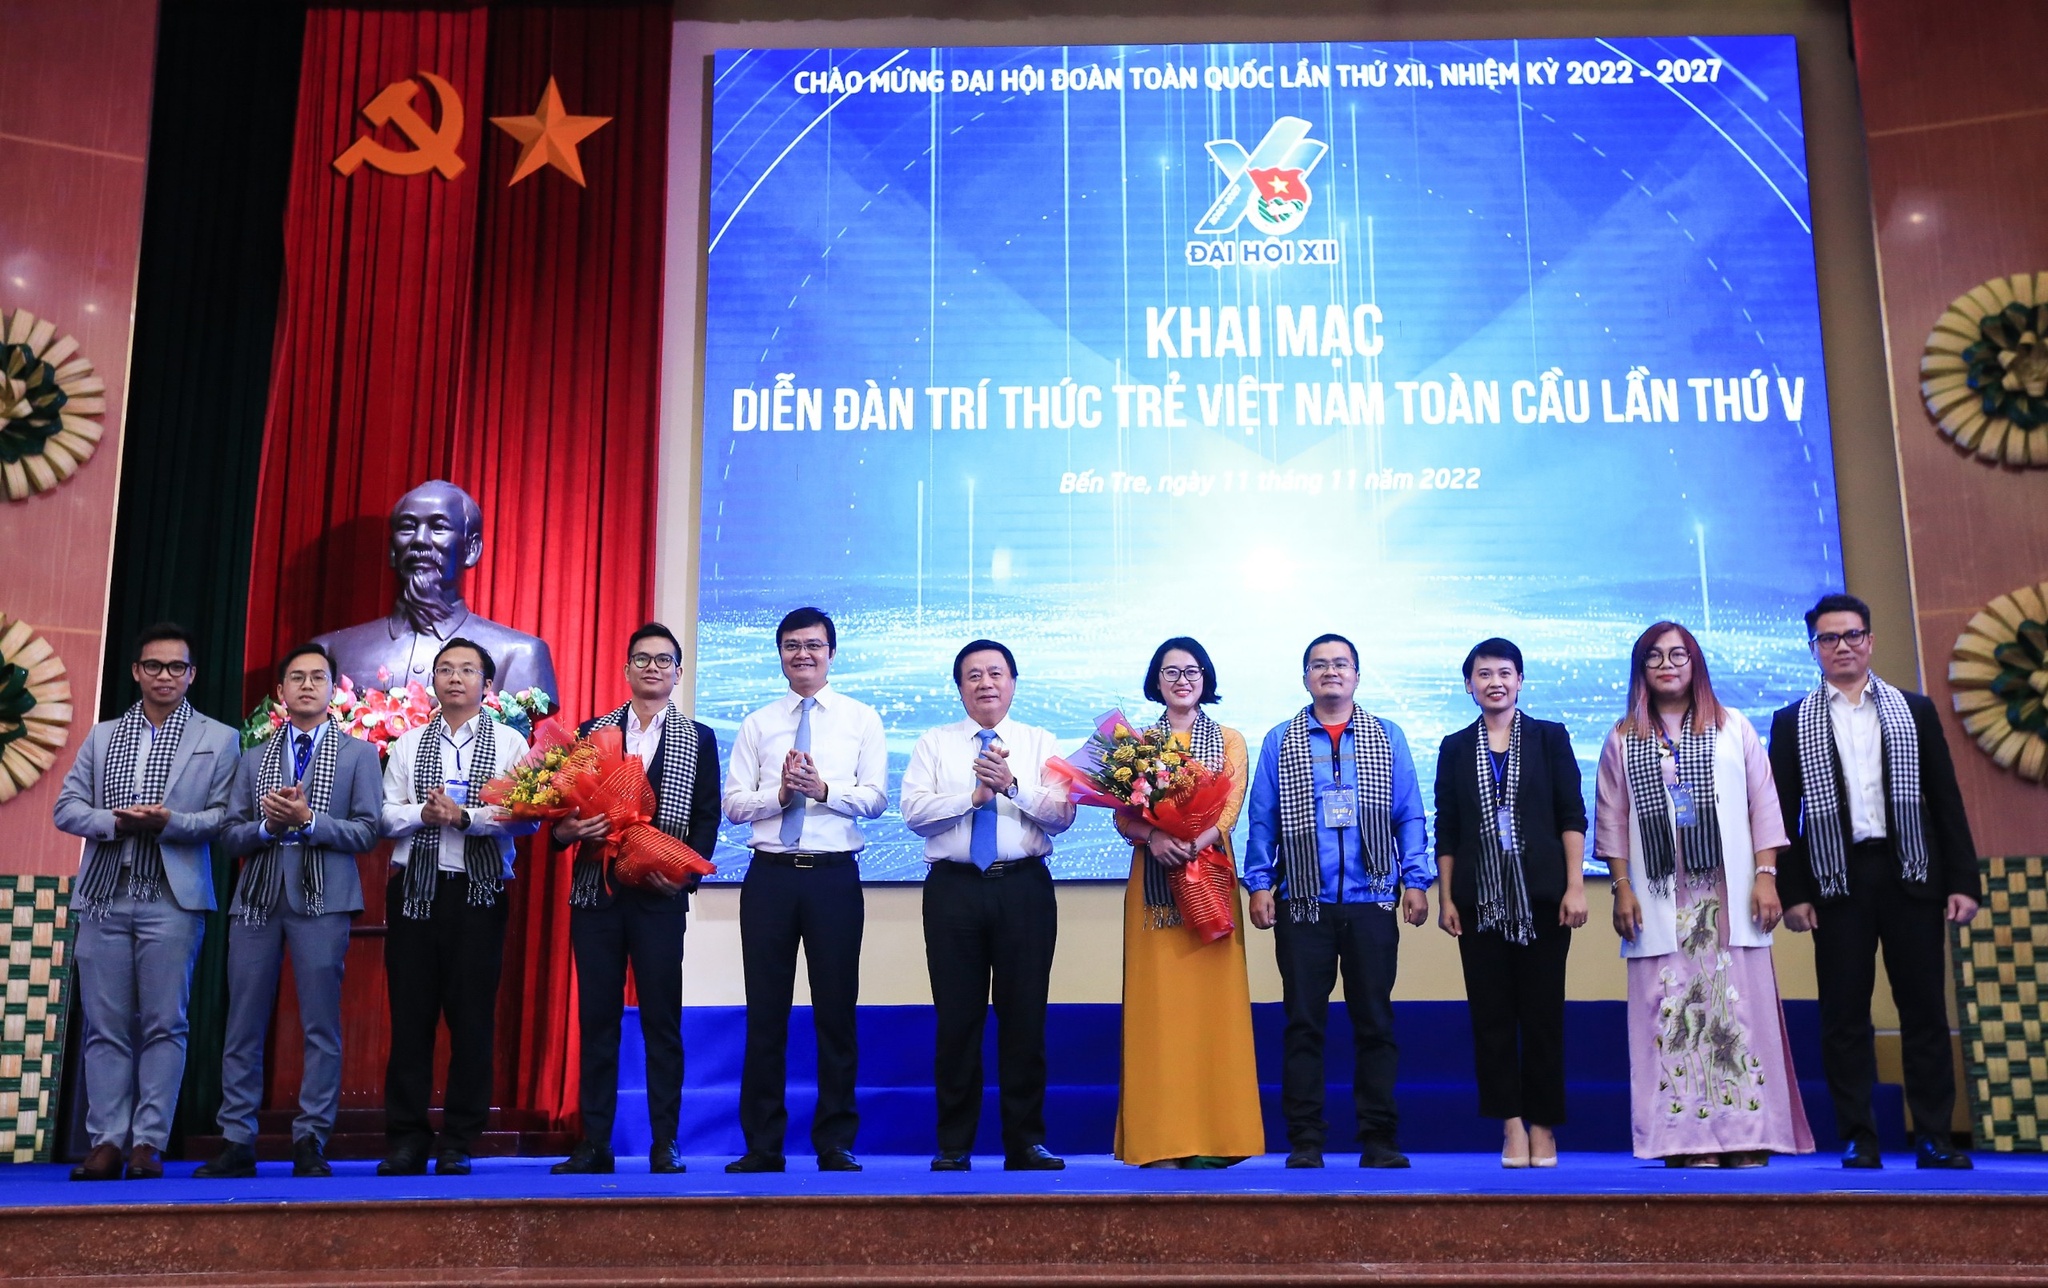 Khai mạc Diễn đàn "Trí thức trẻ Việt Nam toàn cầu" lần thứ 5